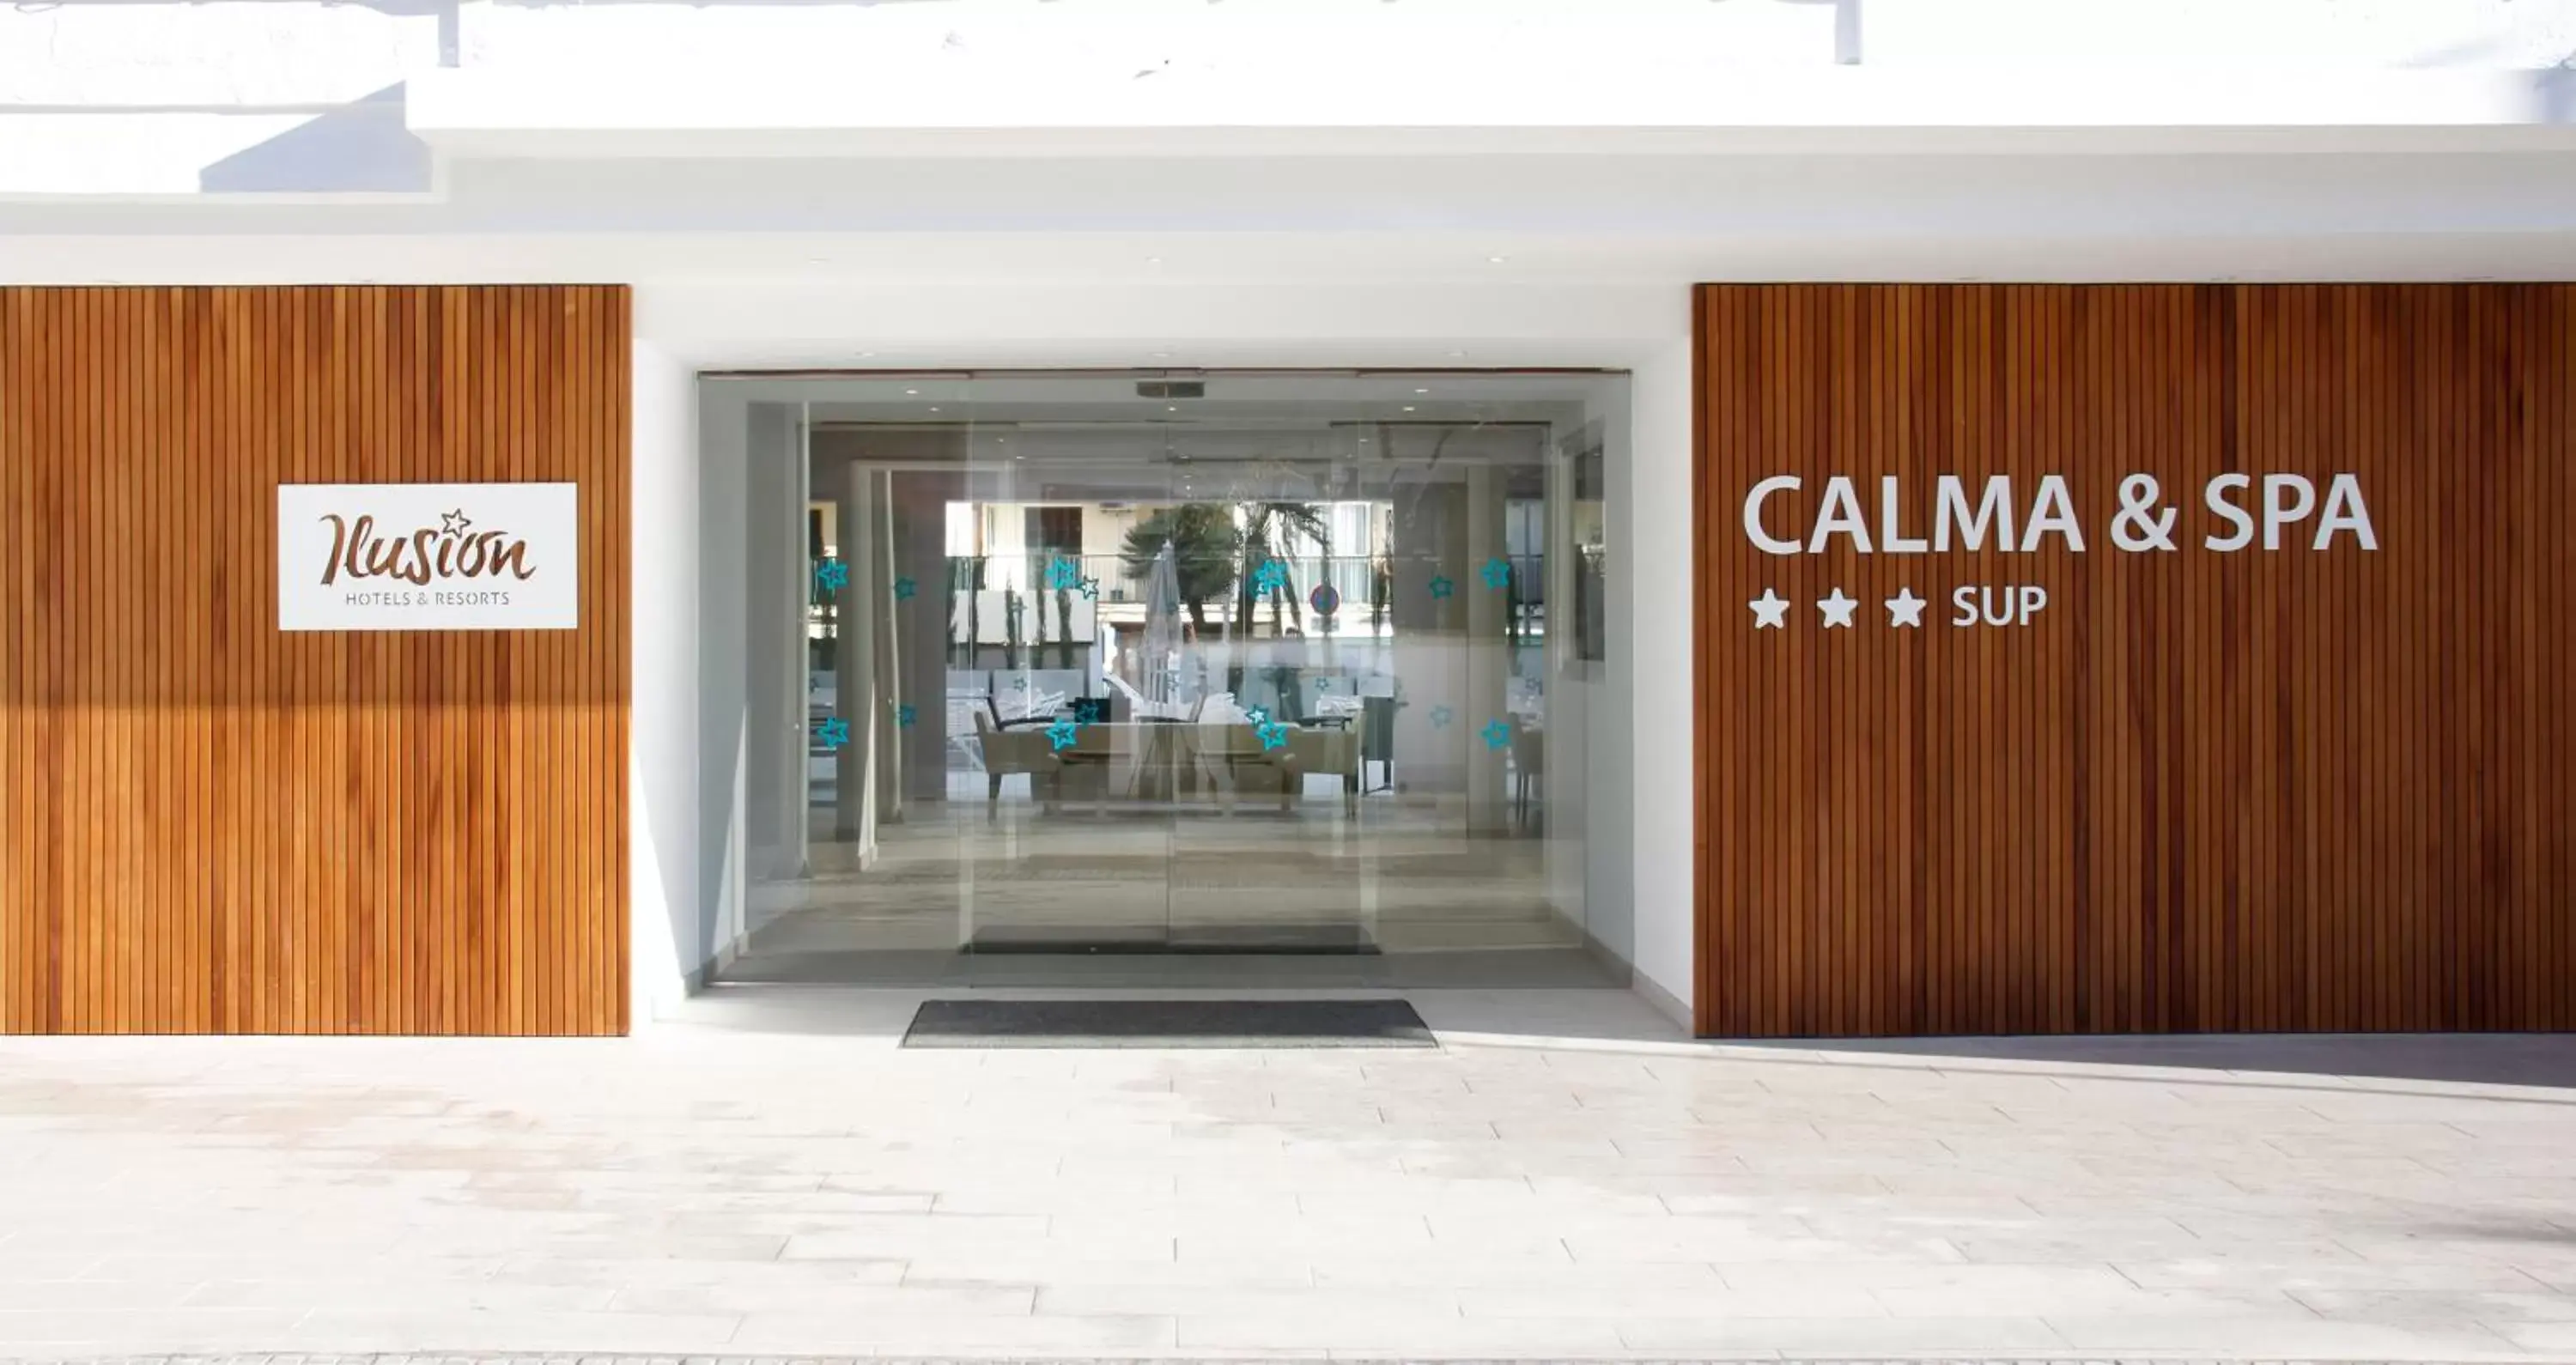 Facade/entrance in Hotel Ilusion Calma & Spa